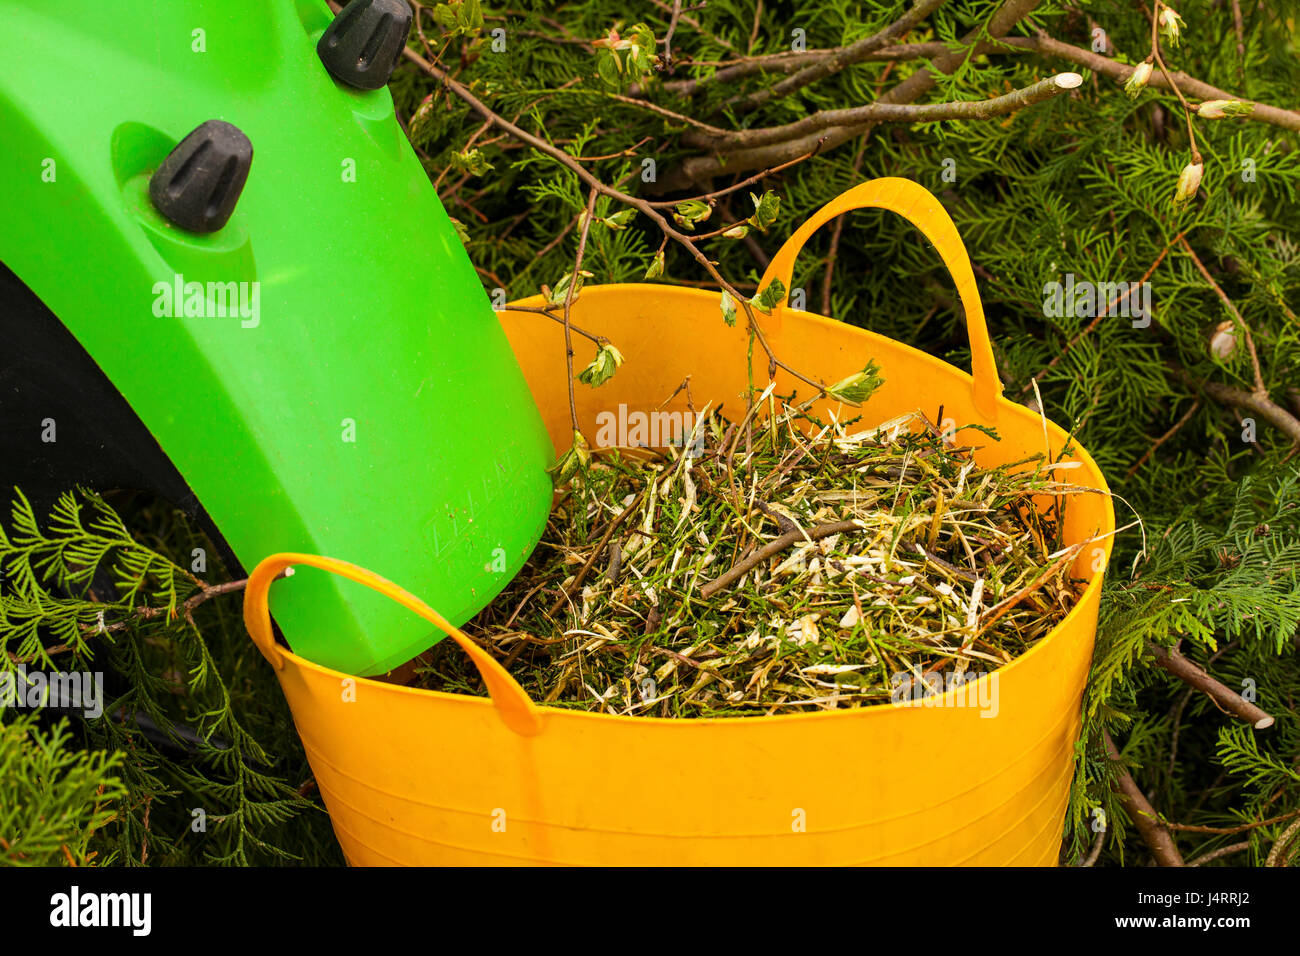 Electric garden shredder in a spring garden Stock Photo